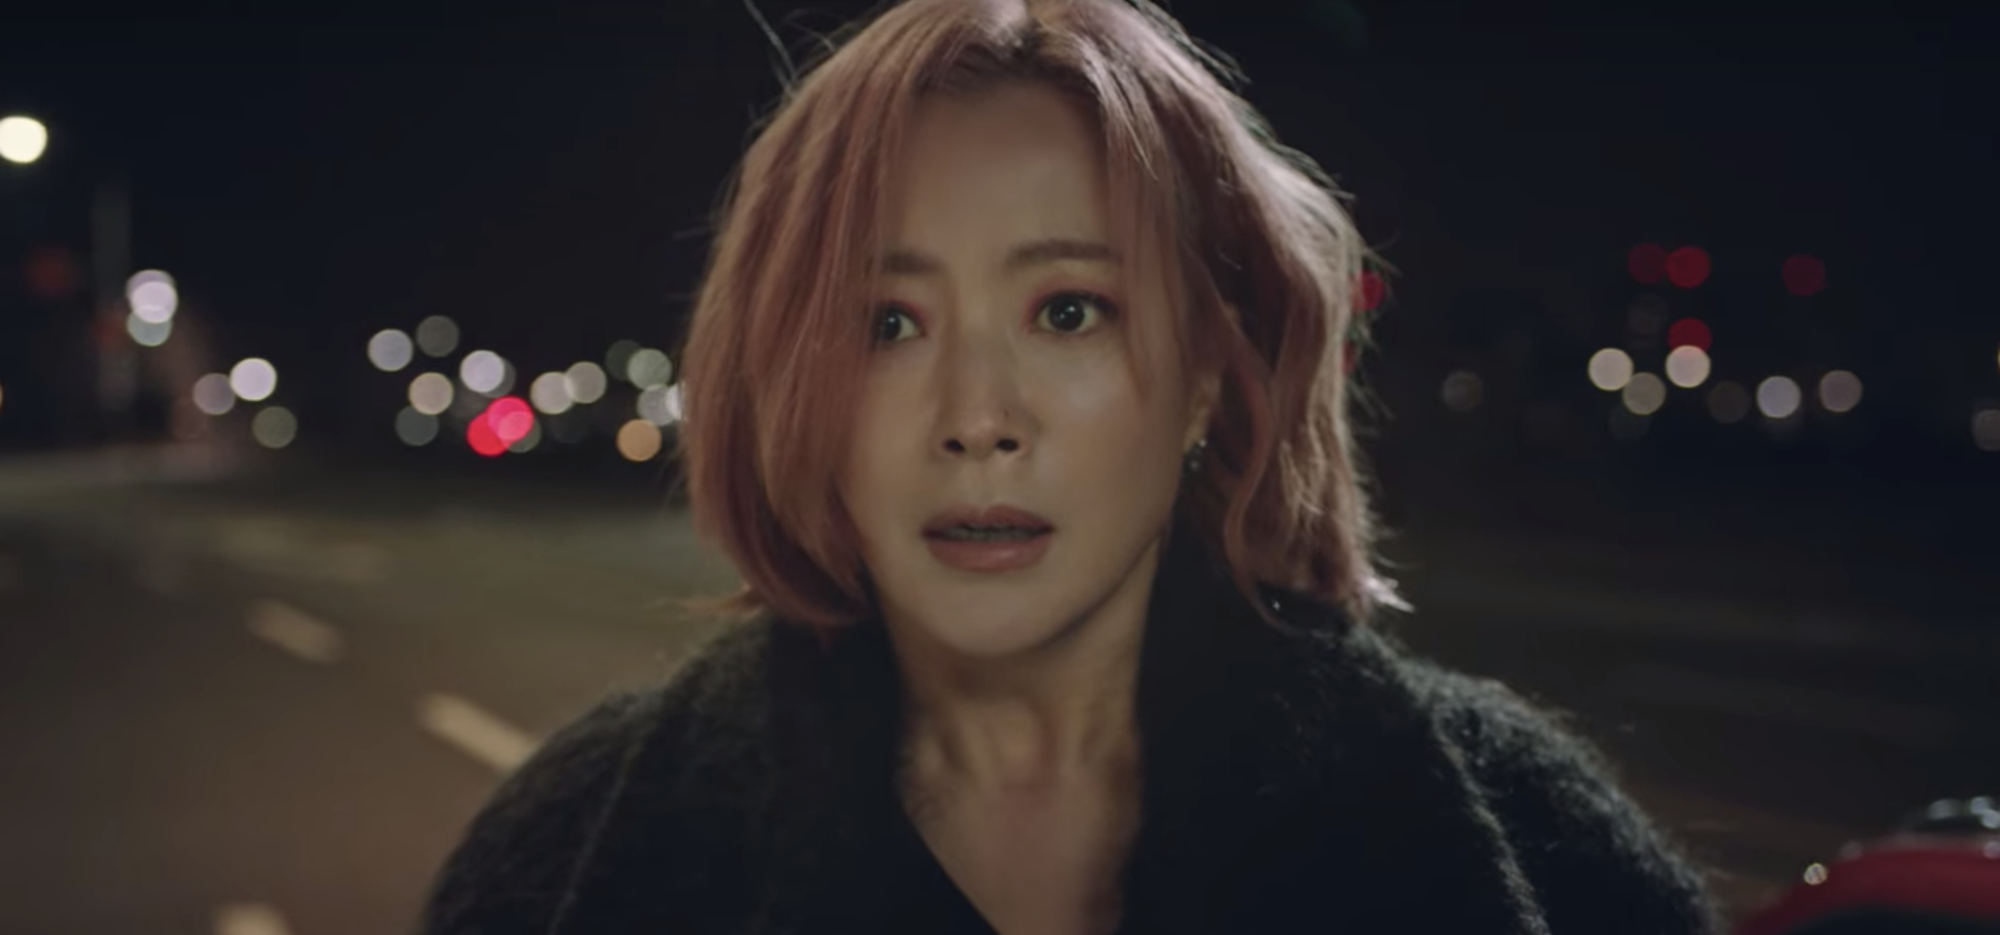 Tomorrow tập 3 mở màn bi kịch: Kim Hee Sun vừa nhận lính mới đã gặp nguy, chuyện áp lực đồng trang lứa nghe mà nhói lòng - Ảnh 4.